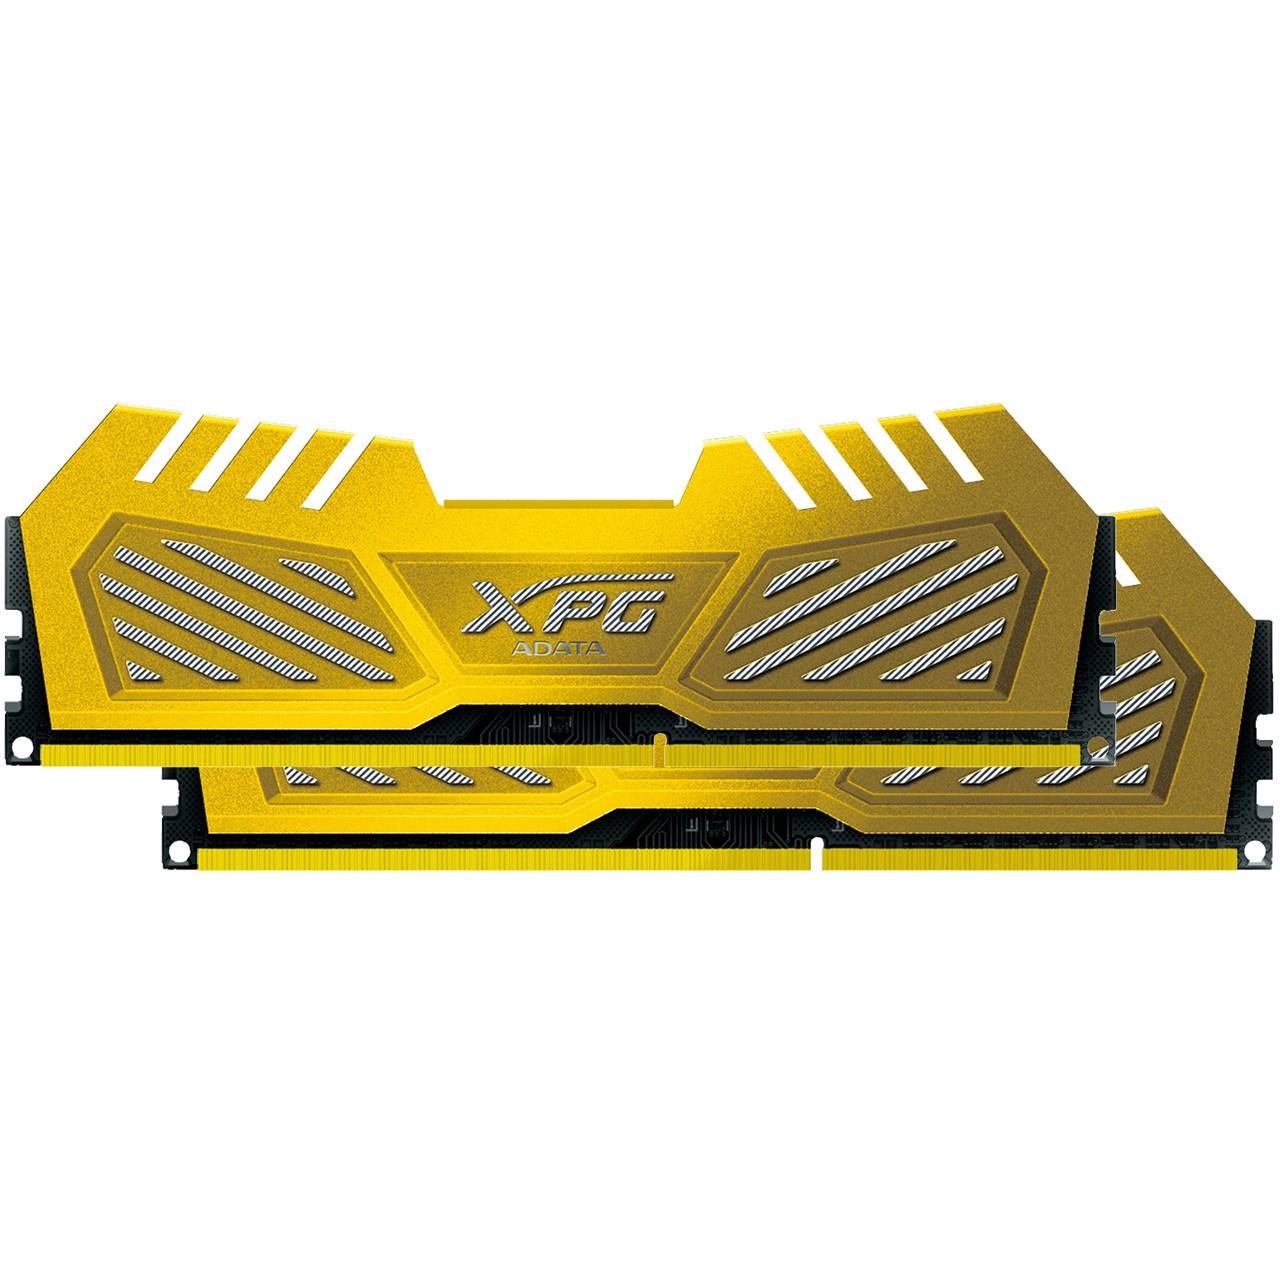 رم دسکتاپ DDR3 دو کاناله 1600 مگاهرتز CL9 ای دیتا مدل XPG V2 ظرفیت 8 گیگابایت